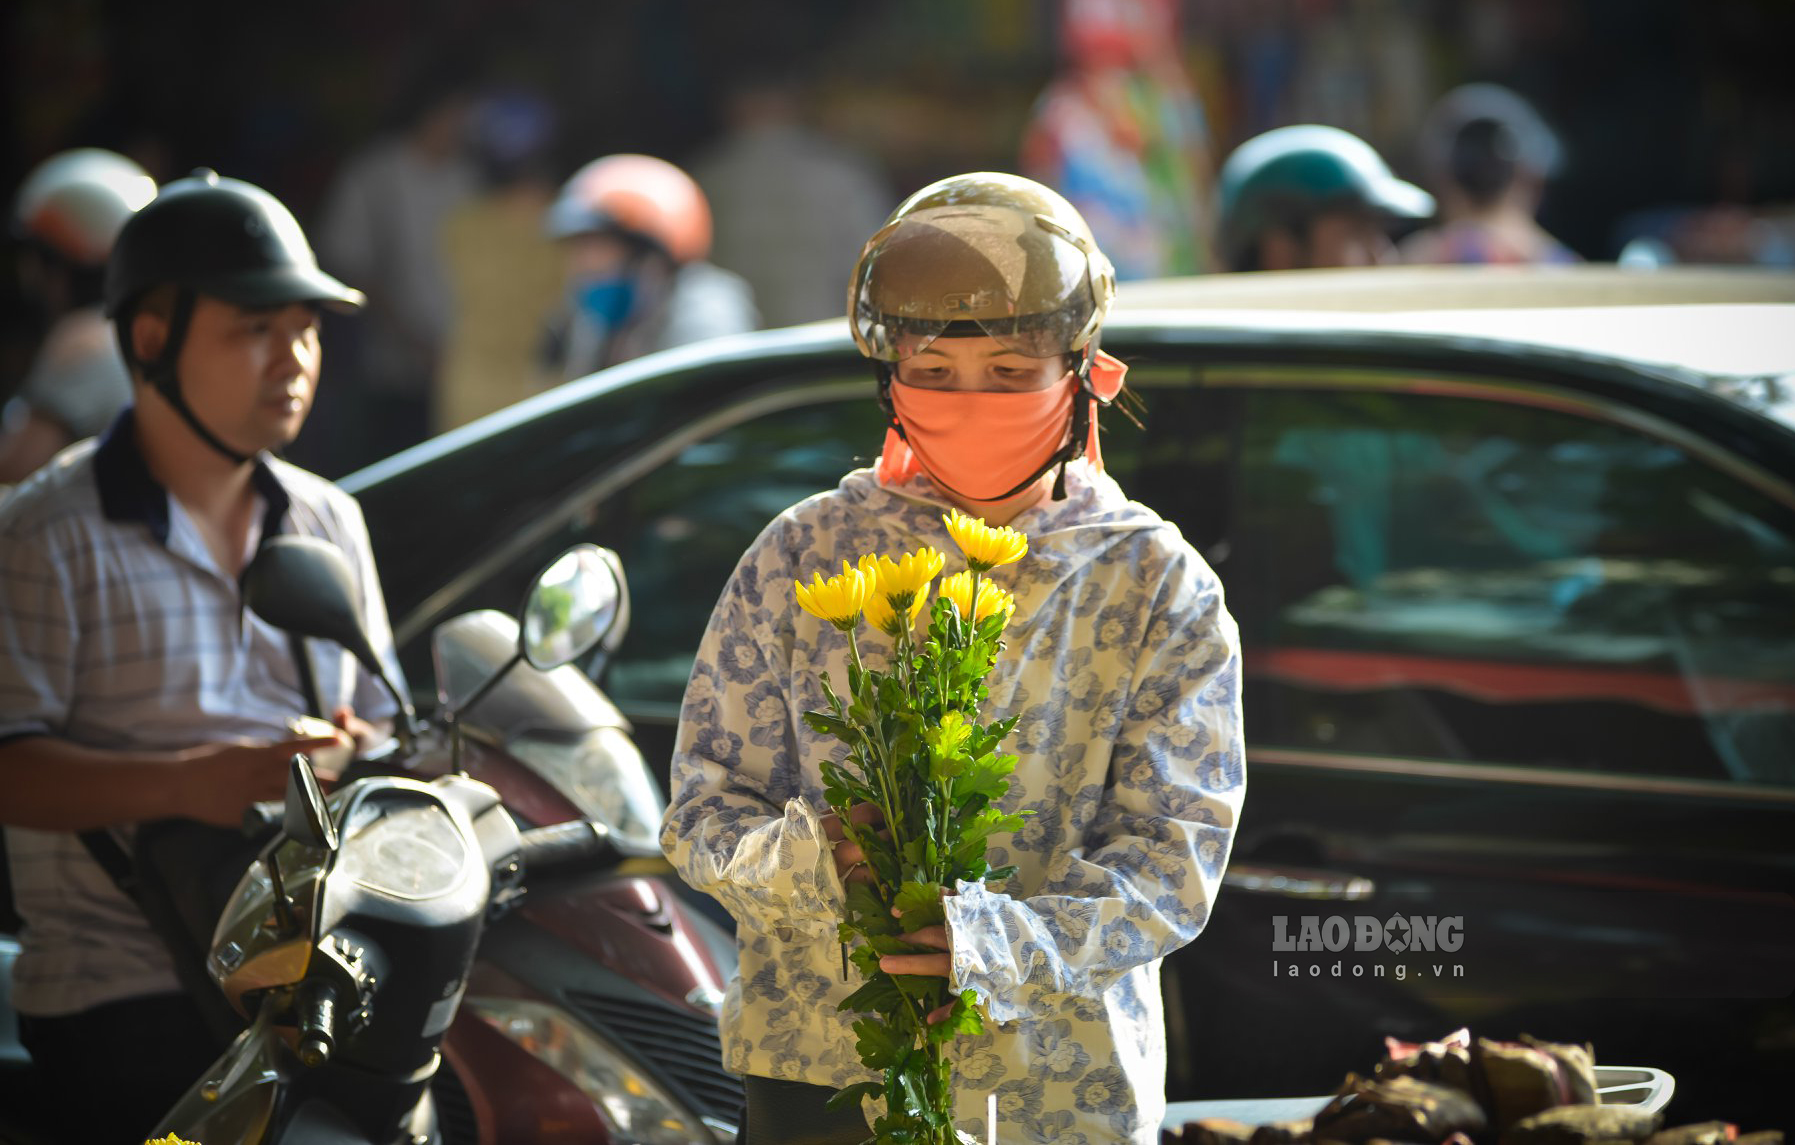 Hoa cúc vàng là một trong những mặt hàng bán chạy nhất trong phiên chợ ngày Vu lan.